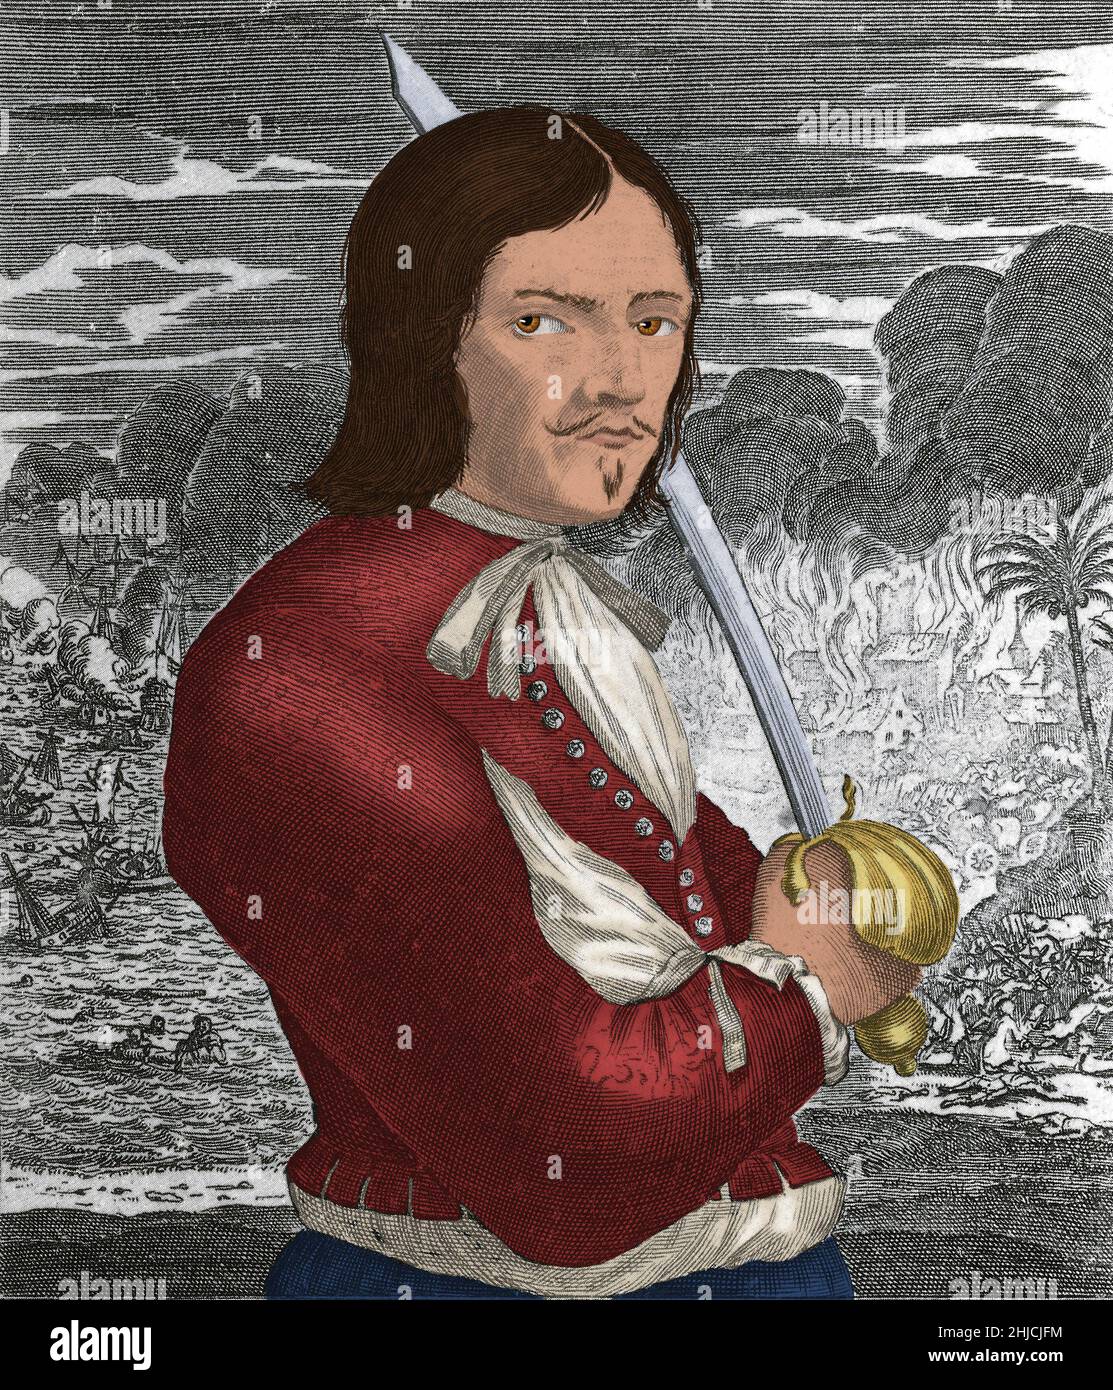 Francois L'Ollonais (1635 - 1668) fue un pirata francés. Él era un torturador experto, y sus técnicas incluían cortar porciones de carne de la víctima con una espada, quemándolos vivos, y woolding, que implicaba atar cuerda anudada alrededor de la cabeza de la víctima hasta que sus ojos fueron forzados a salir. Él y sus hombres violaron, saquearon y quemaron gran parte de Maracaibo antes de trasladarse al sur a Gibraltar. A pesar de ser superados, los piratas mataron a 500 soldados de la guarnición de Gibraltar y retuvieron la ciudad para el rescate. Encalló en una barra de arena en la costa de Darien. Se dirigieron hacia el interior para encontrar comida, pero eran ca Foto de stock